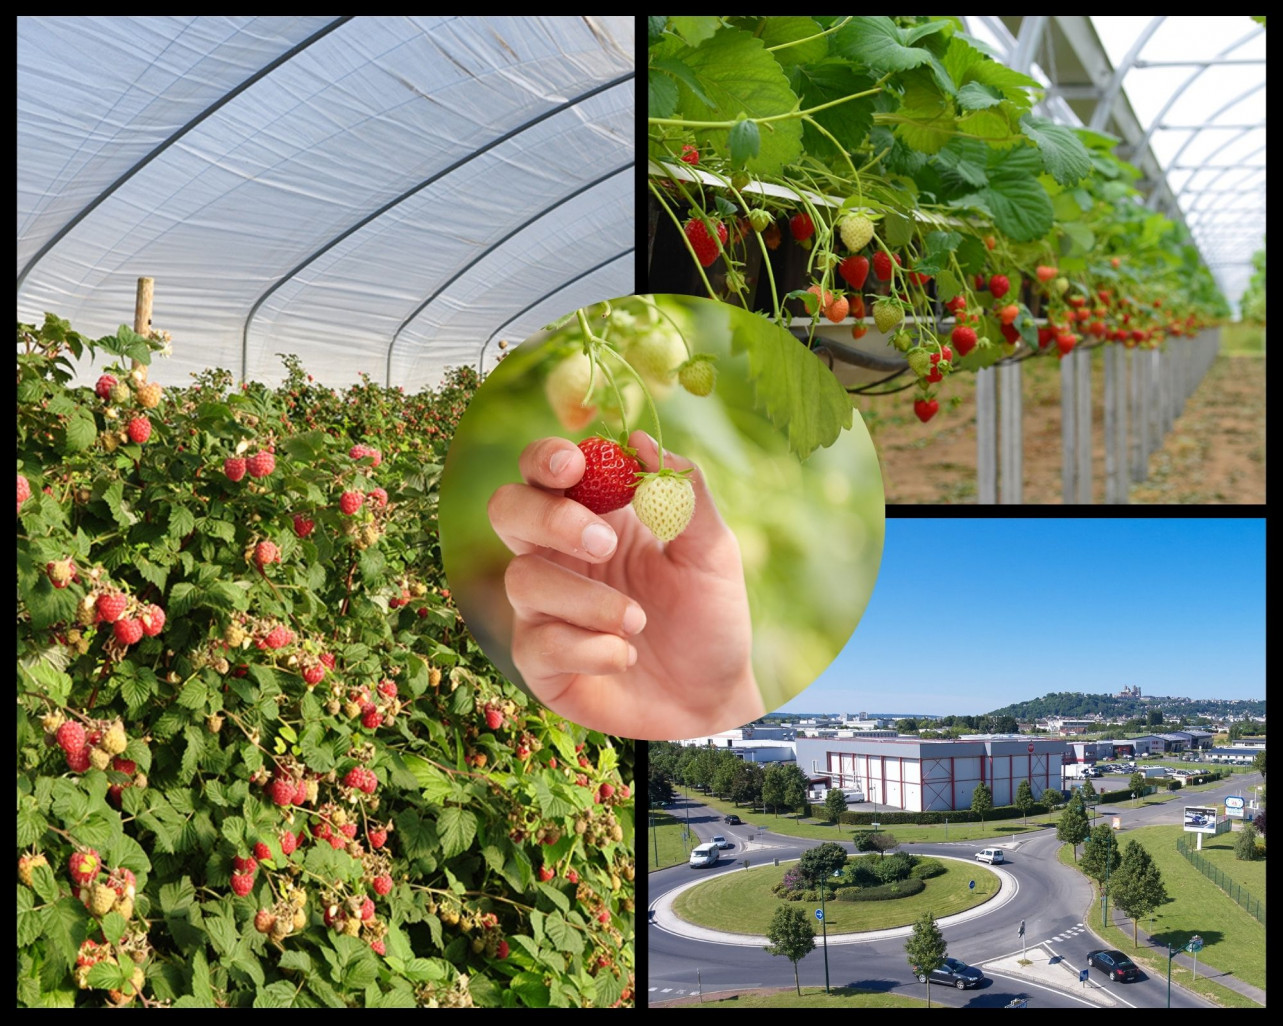 Fruits Rouges & Co veut accroître la production en local. (c)Fruits Rouges & Co/ montage PLG